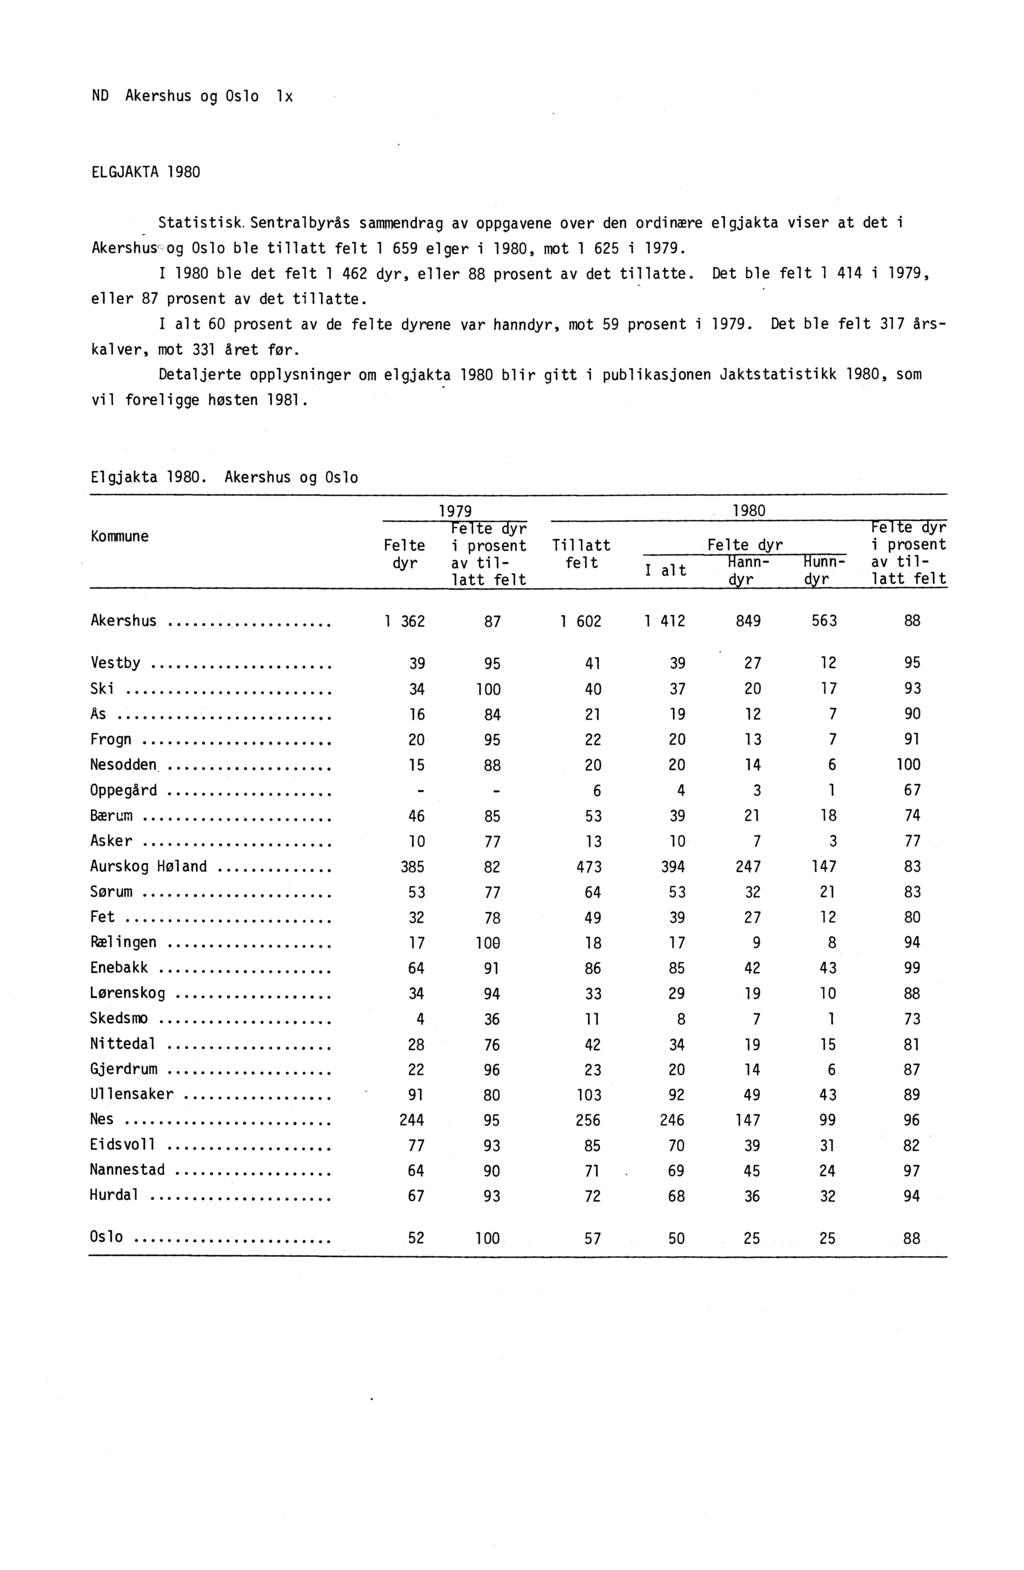 ND Akershus og Oslo lx ELGJAKTA 1980 Statistisk.Sentralbyrås sammendrag av oppgavene over den ordinære elgjakta viser at det i Akersh ūs' og Oslo ble tillatt felt 1 659 elger i 1980, mot 1 625 i 1979.